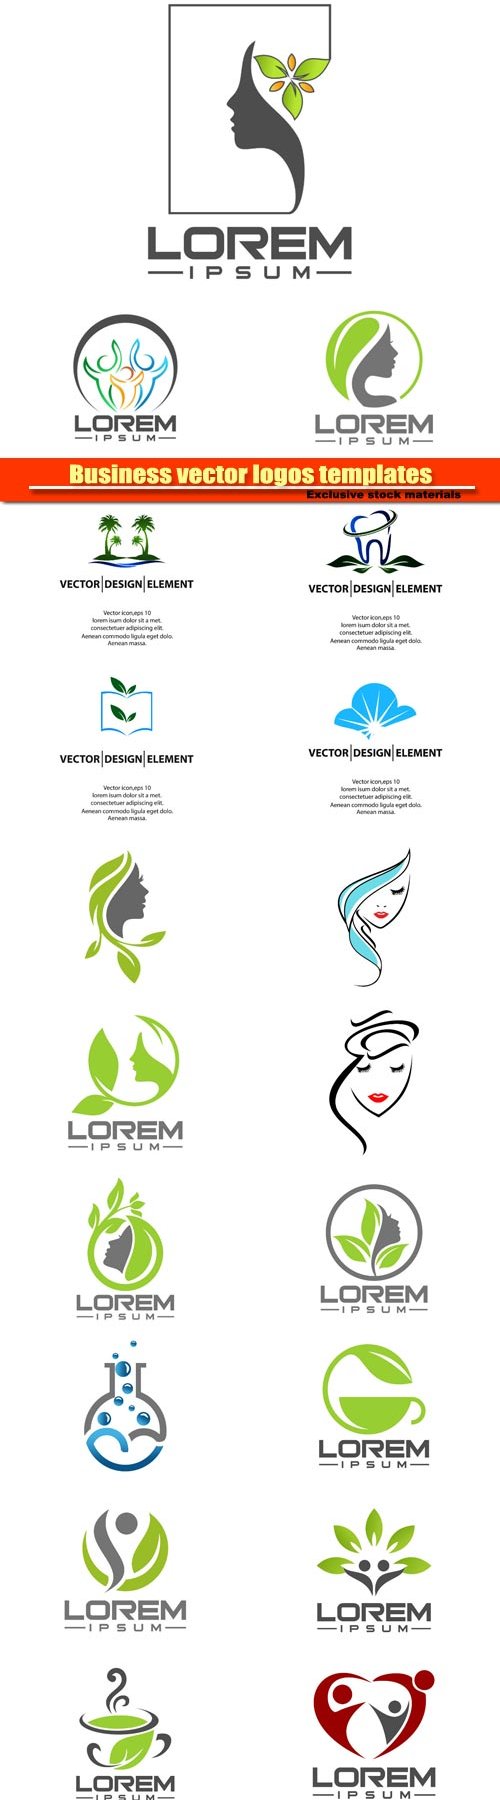 Business vector logos templates 10